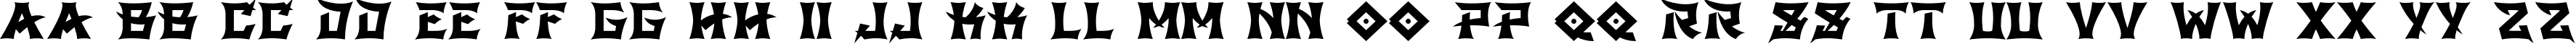 Пример написания английского алфавита шрифтом GB Shinto Regular